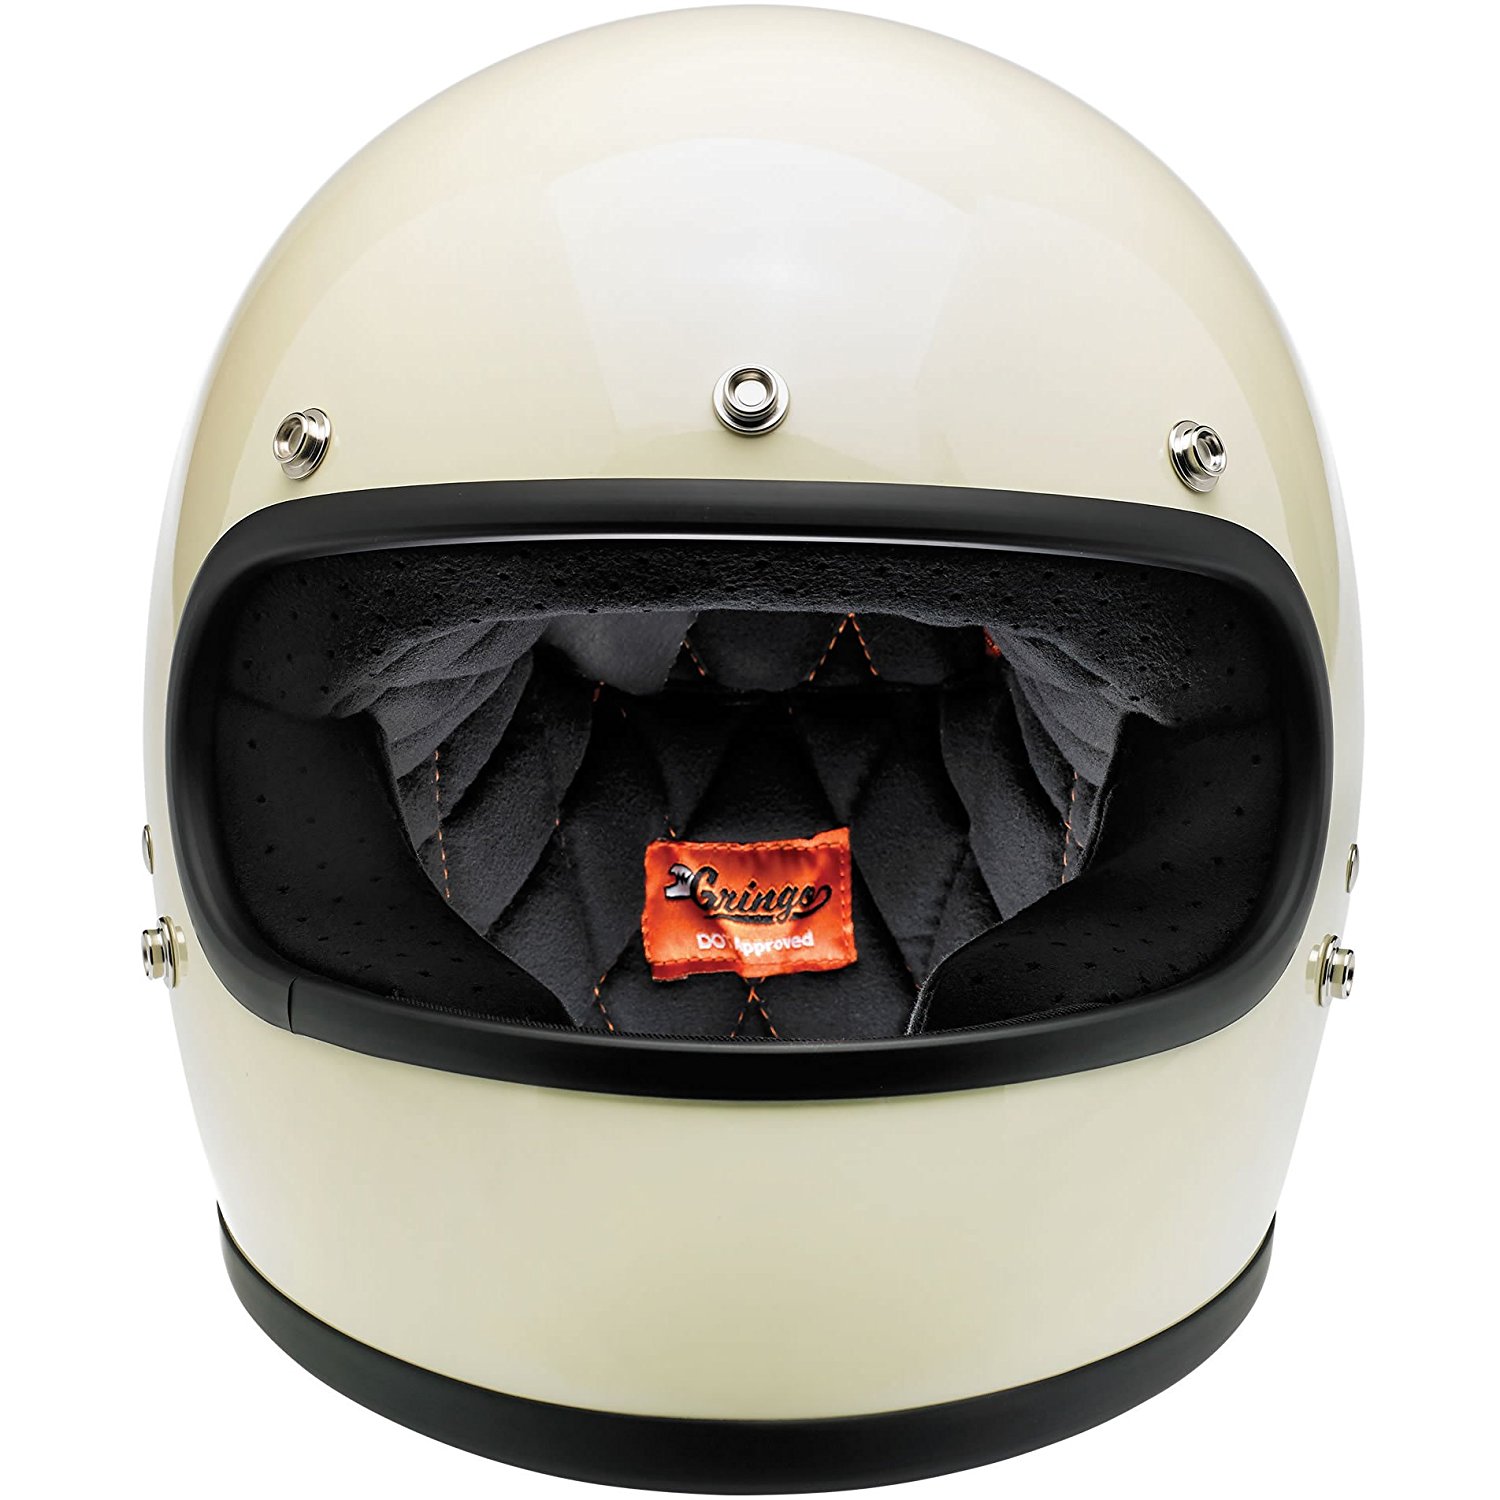 Amazon.com: Biltwell Gringo Full Face Helmet (Gloss Vintage White ...